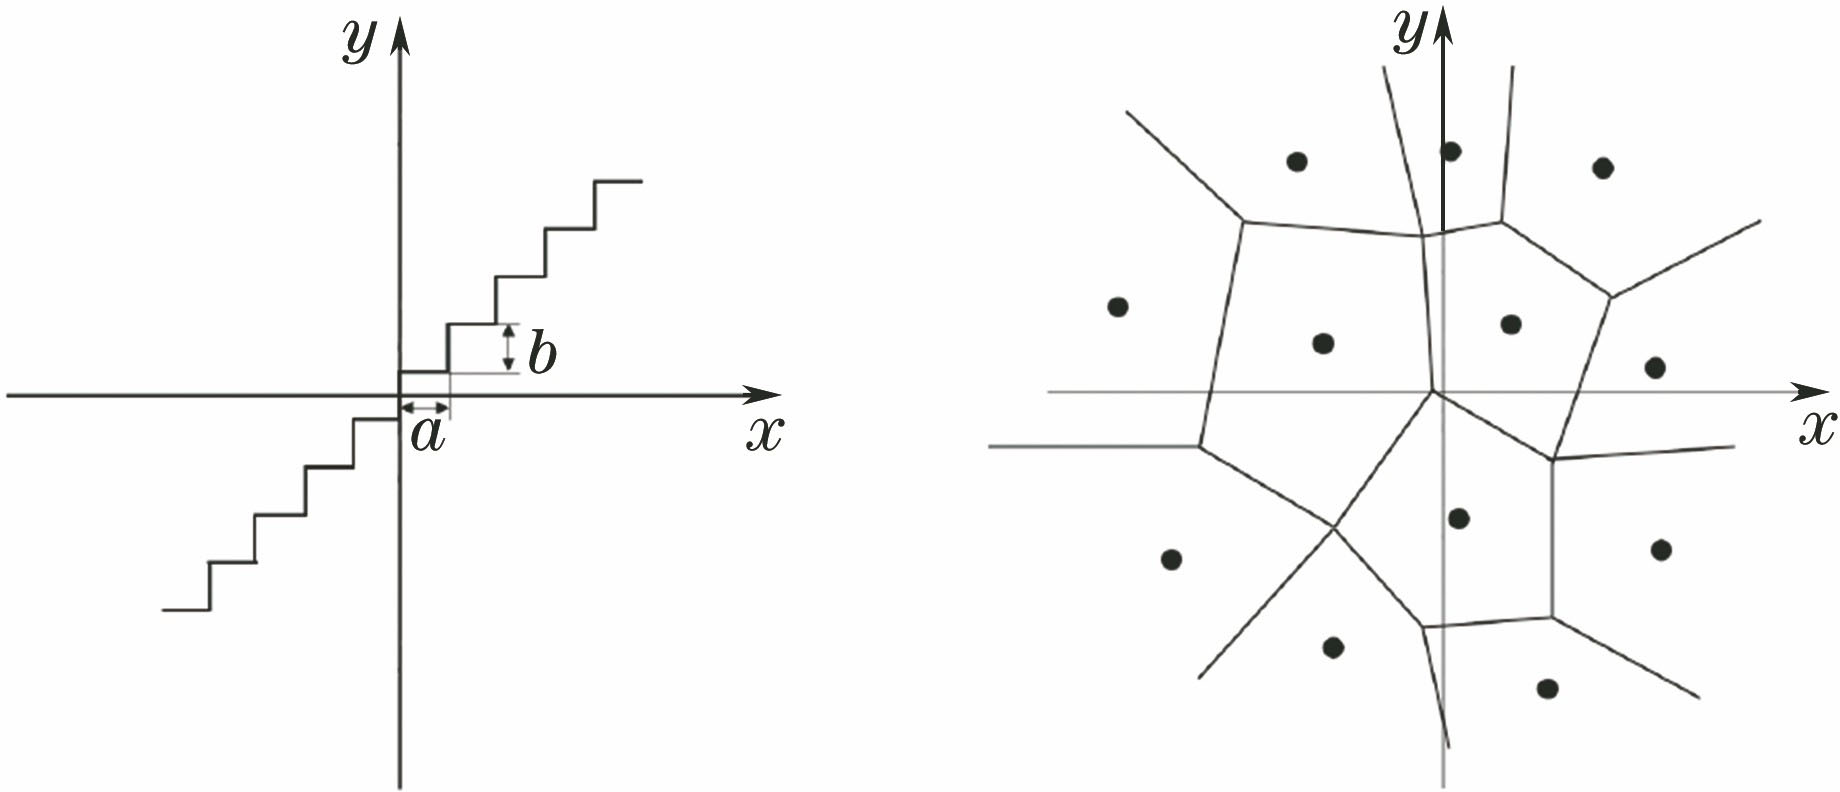 Quantization patterns. (a) Scalar quantization; (b) vector quantization